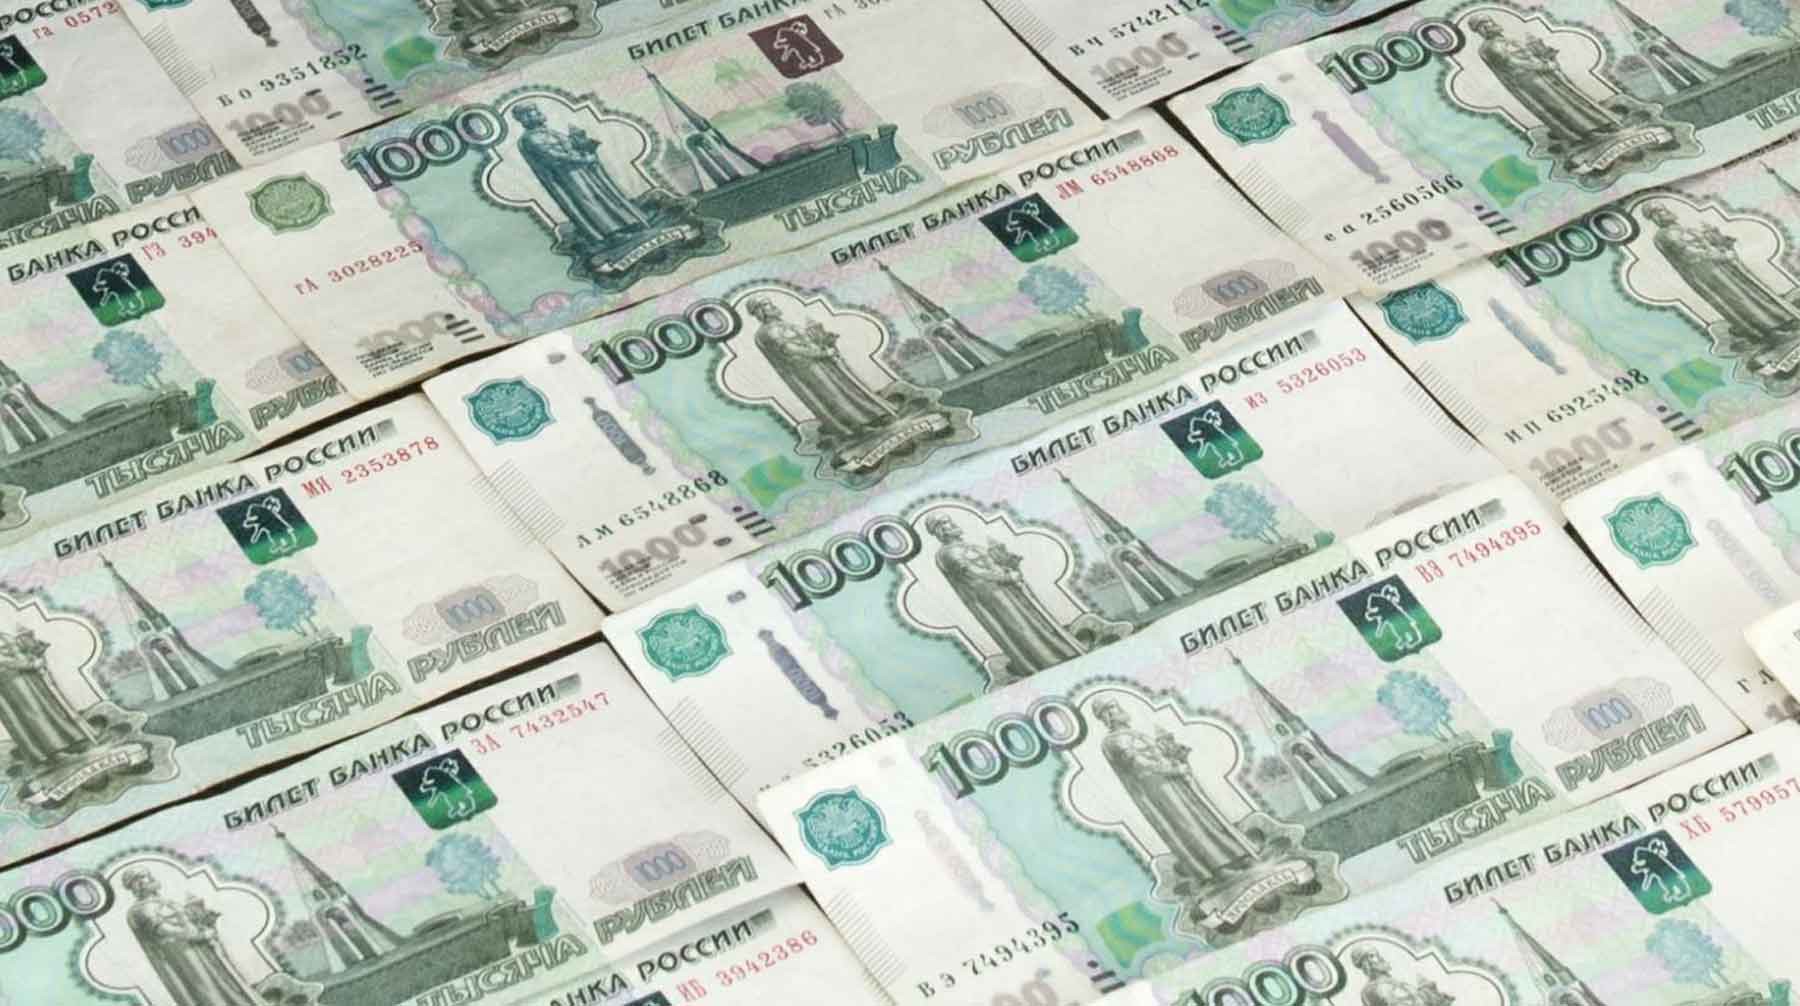 Dailystorm - Больше, чем у Захарченко: у полковника ФСБ Черкалина нашли 12 миллиардов рублей